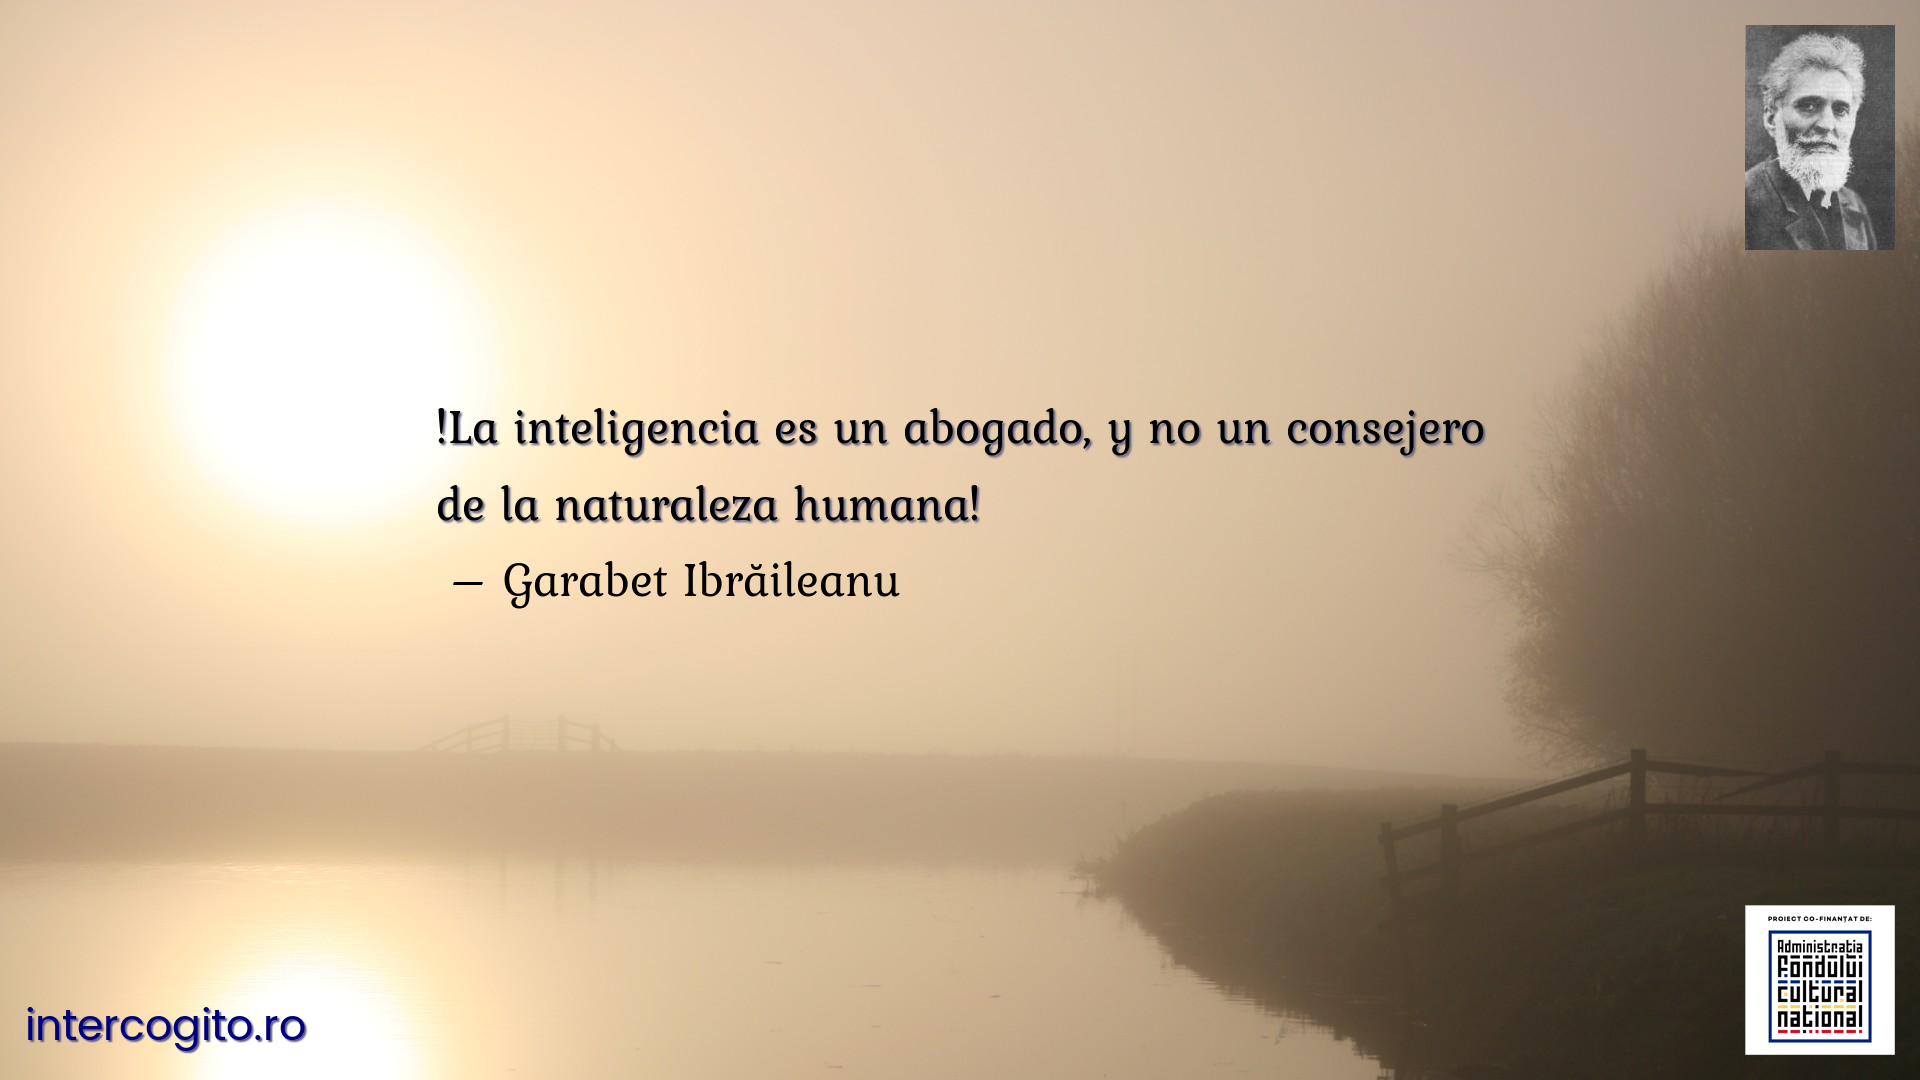 !La inteligencia es un abogado, y no un consejero de la naturaleza humana!